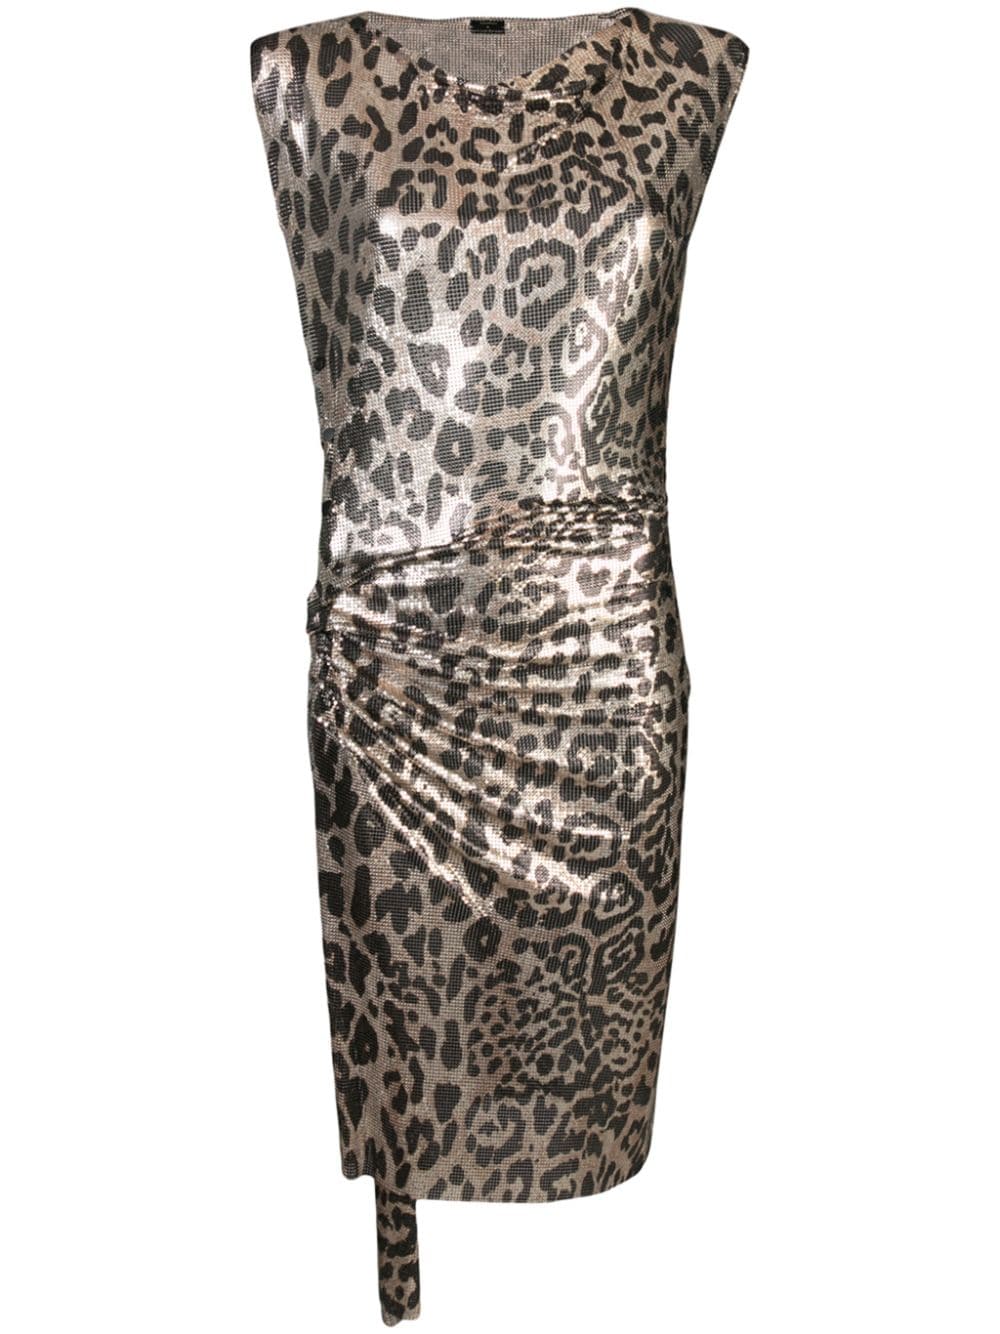 фото Paco rabanne леопардовое платье с эффектом металлик